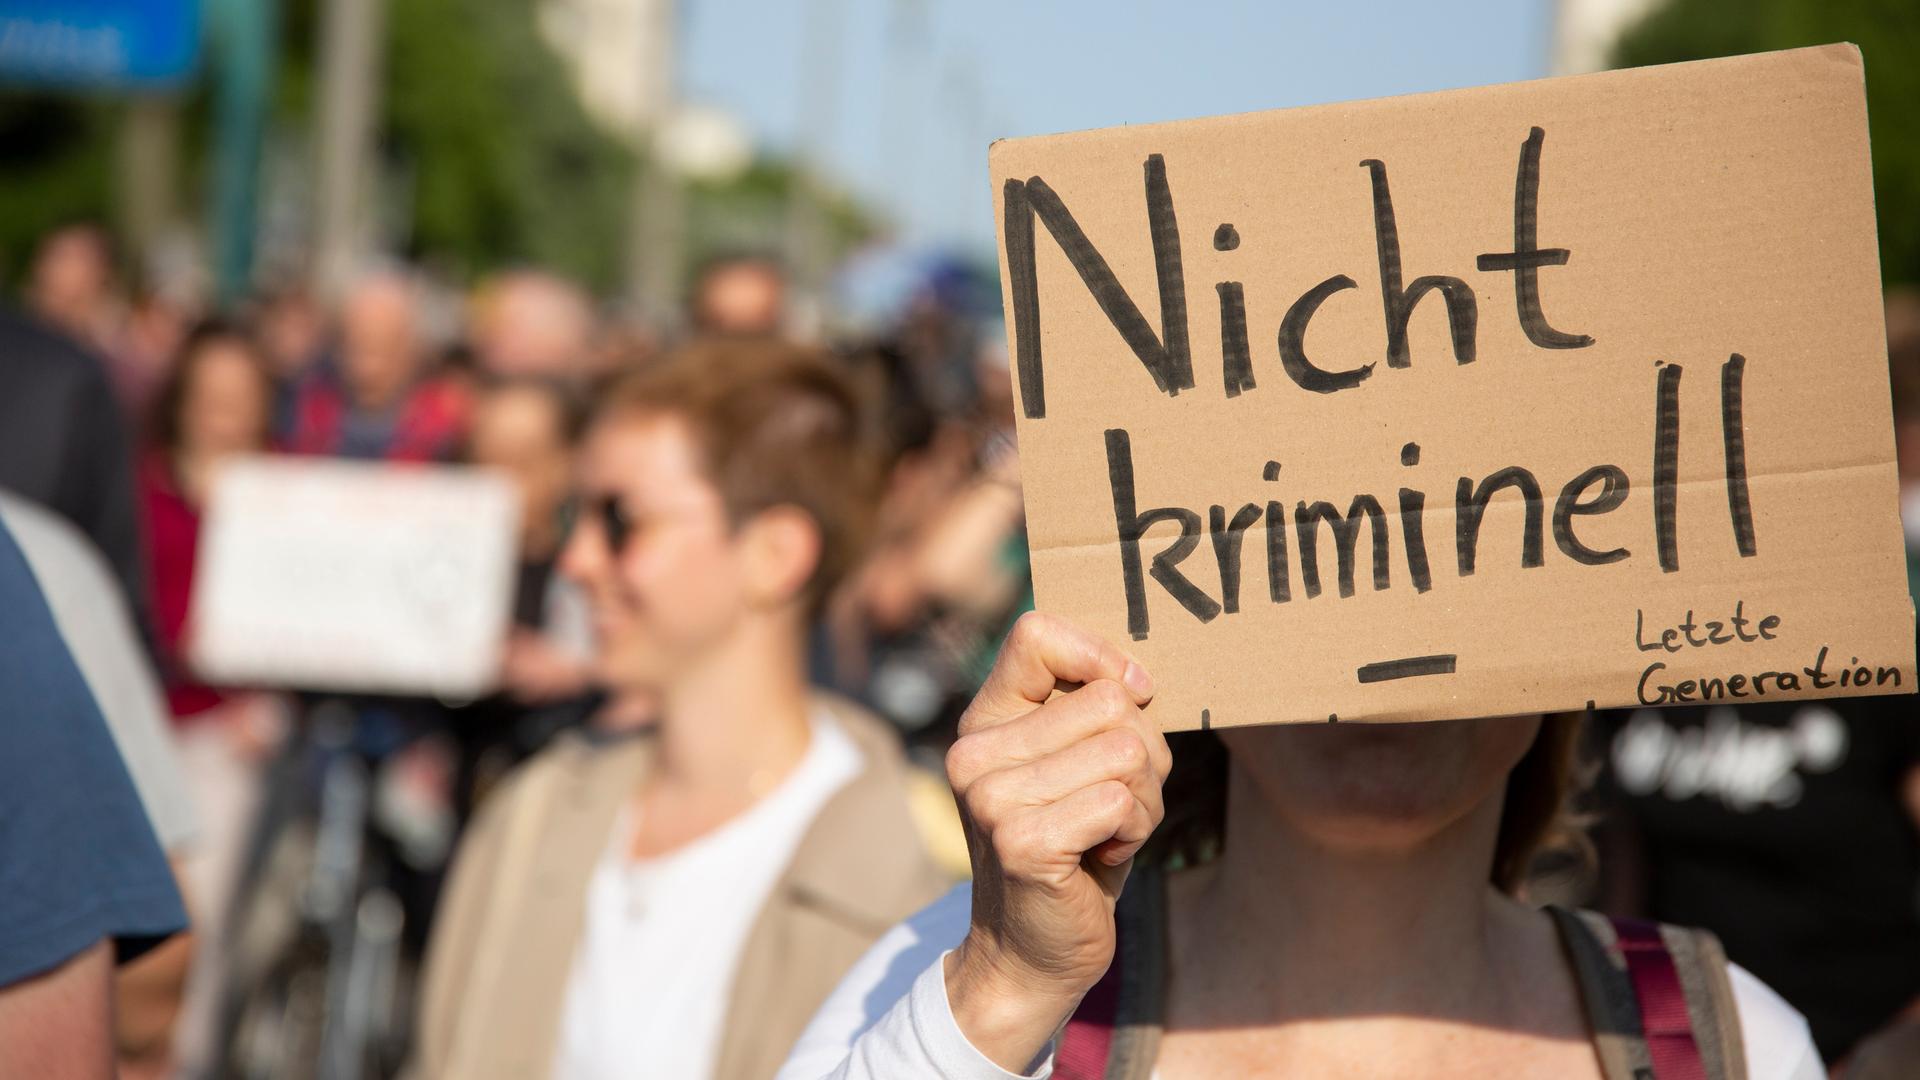 Menschen laufen bei einem Protestmarsch durch die Straßen. Eine Person hält ein Schild vor ihr Gesicht, auf dem "nicht kriminell" steht.